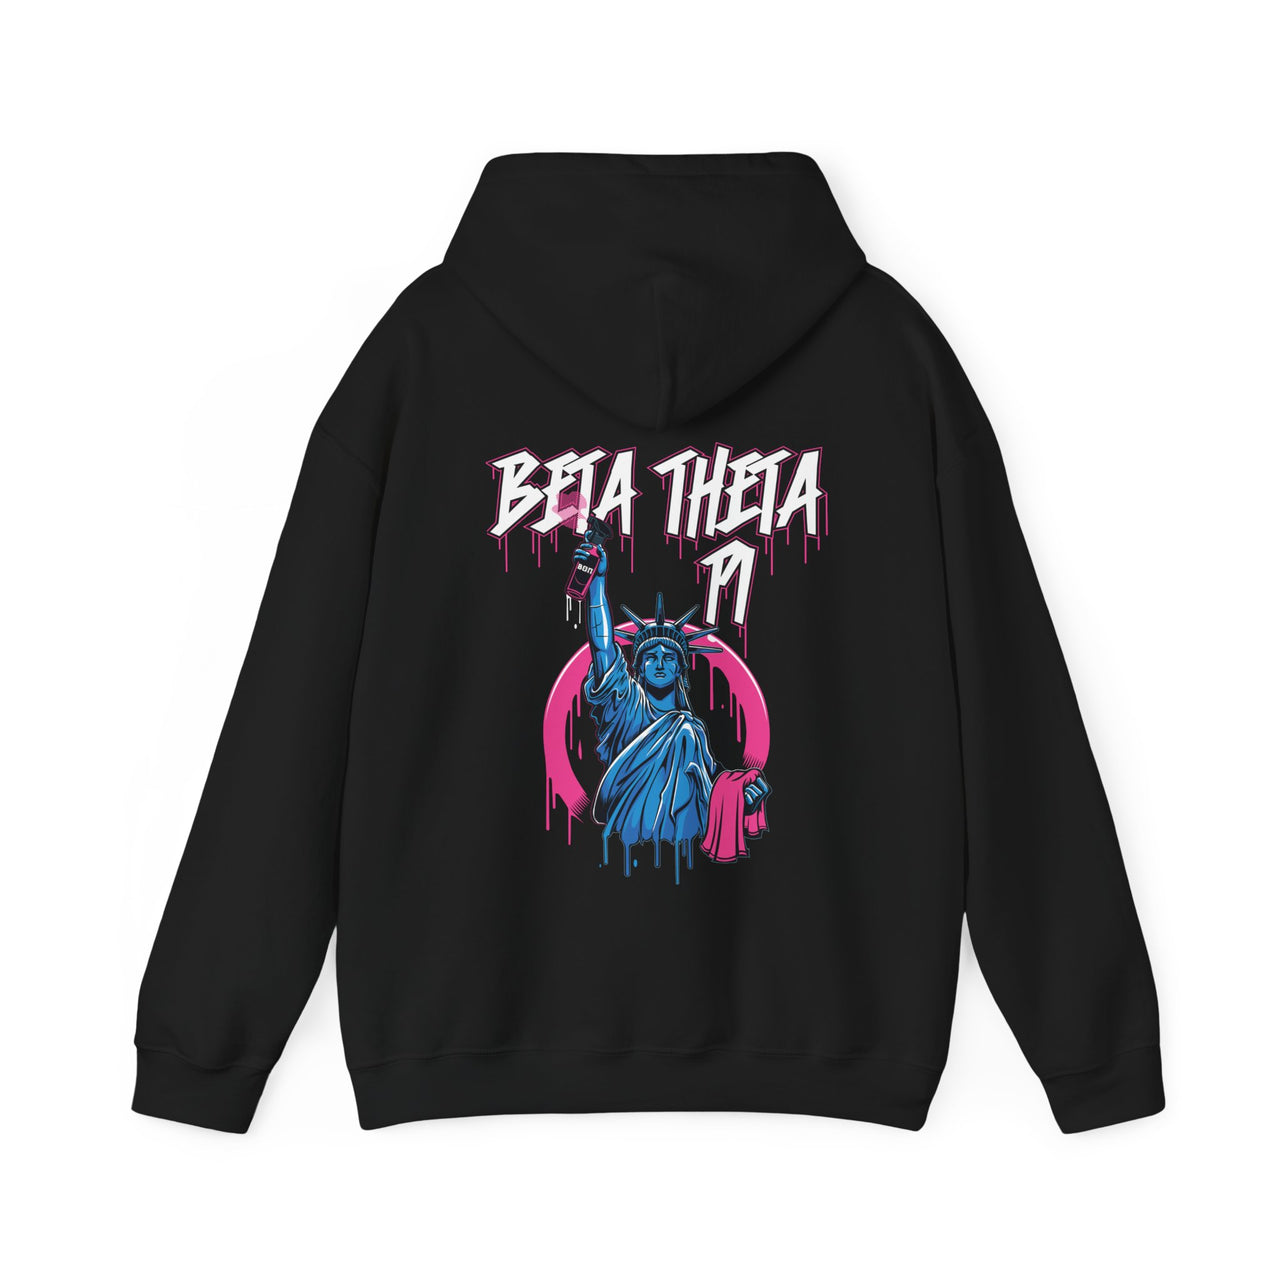 Beta Theta Pi Graphic Hoodie | Liberty Rebel